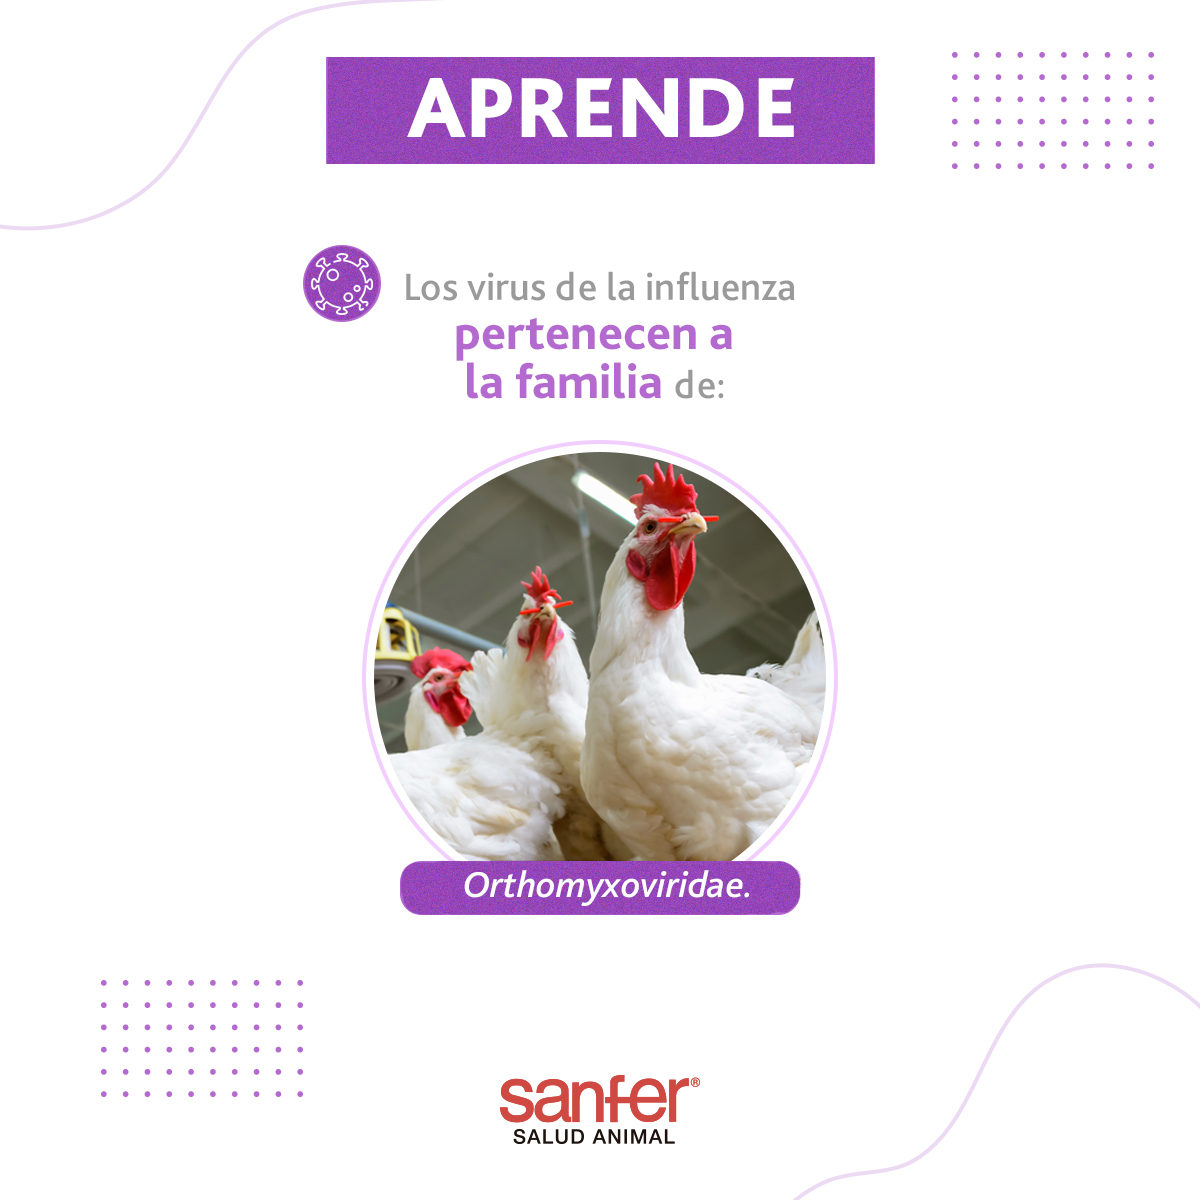 Los virus de la influenza aviar continúan en circulación, siendo un problema importante en la avicultura mundial, ¡Protege a tus aves de producción!

#Avicultura #SanferSaludAnimal #Aves #InfluenzaAviar #GranjasAvícolas